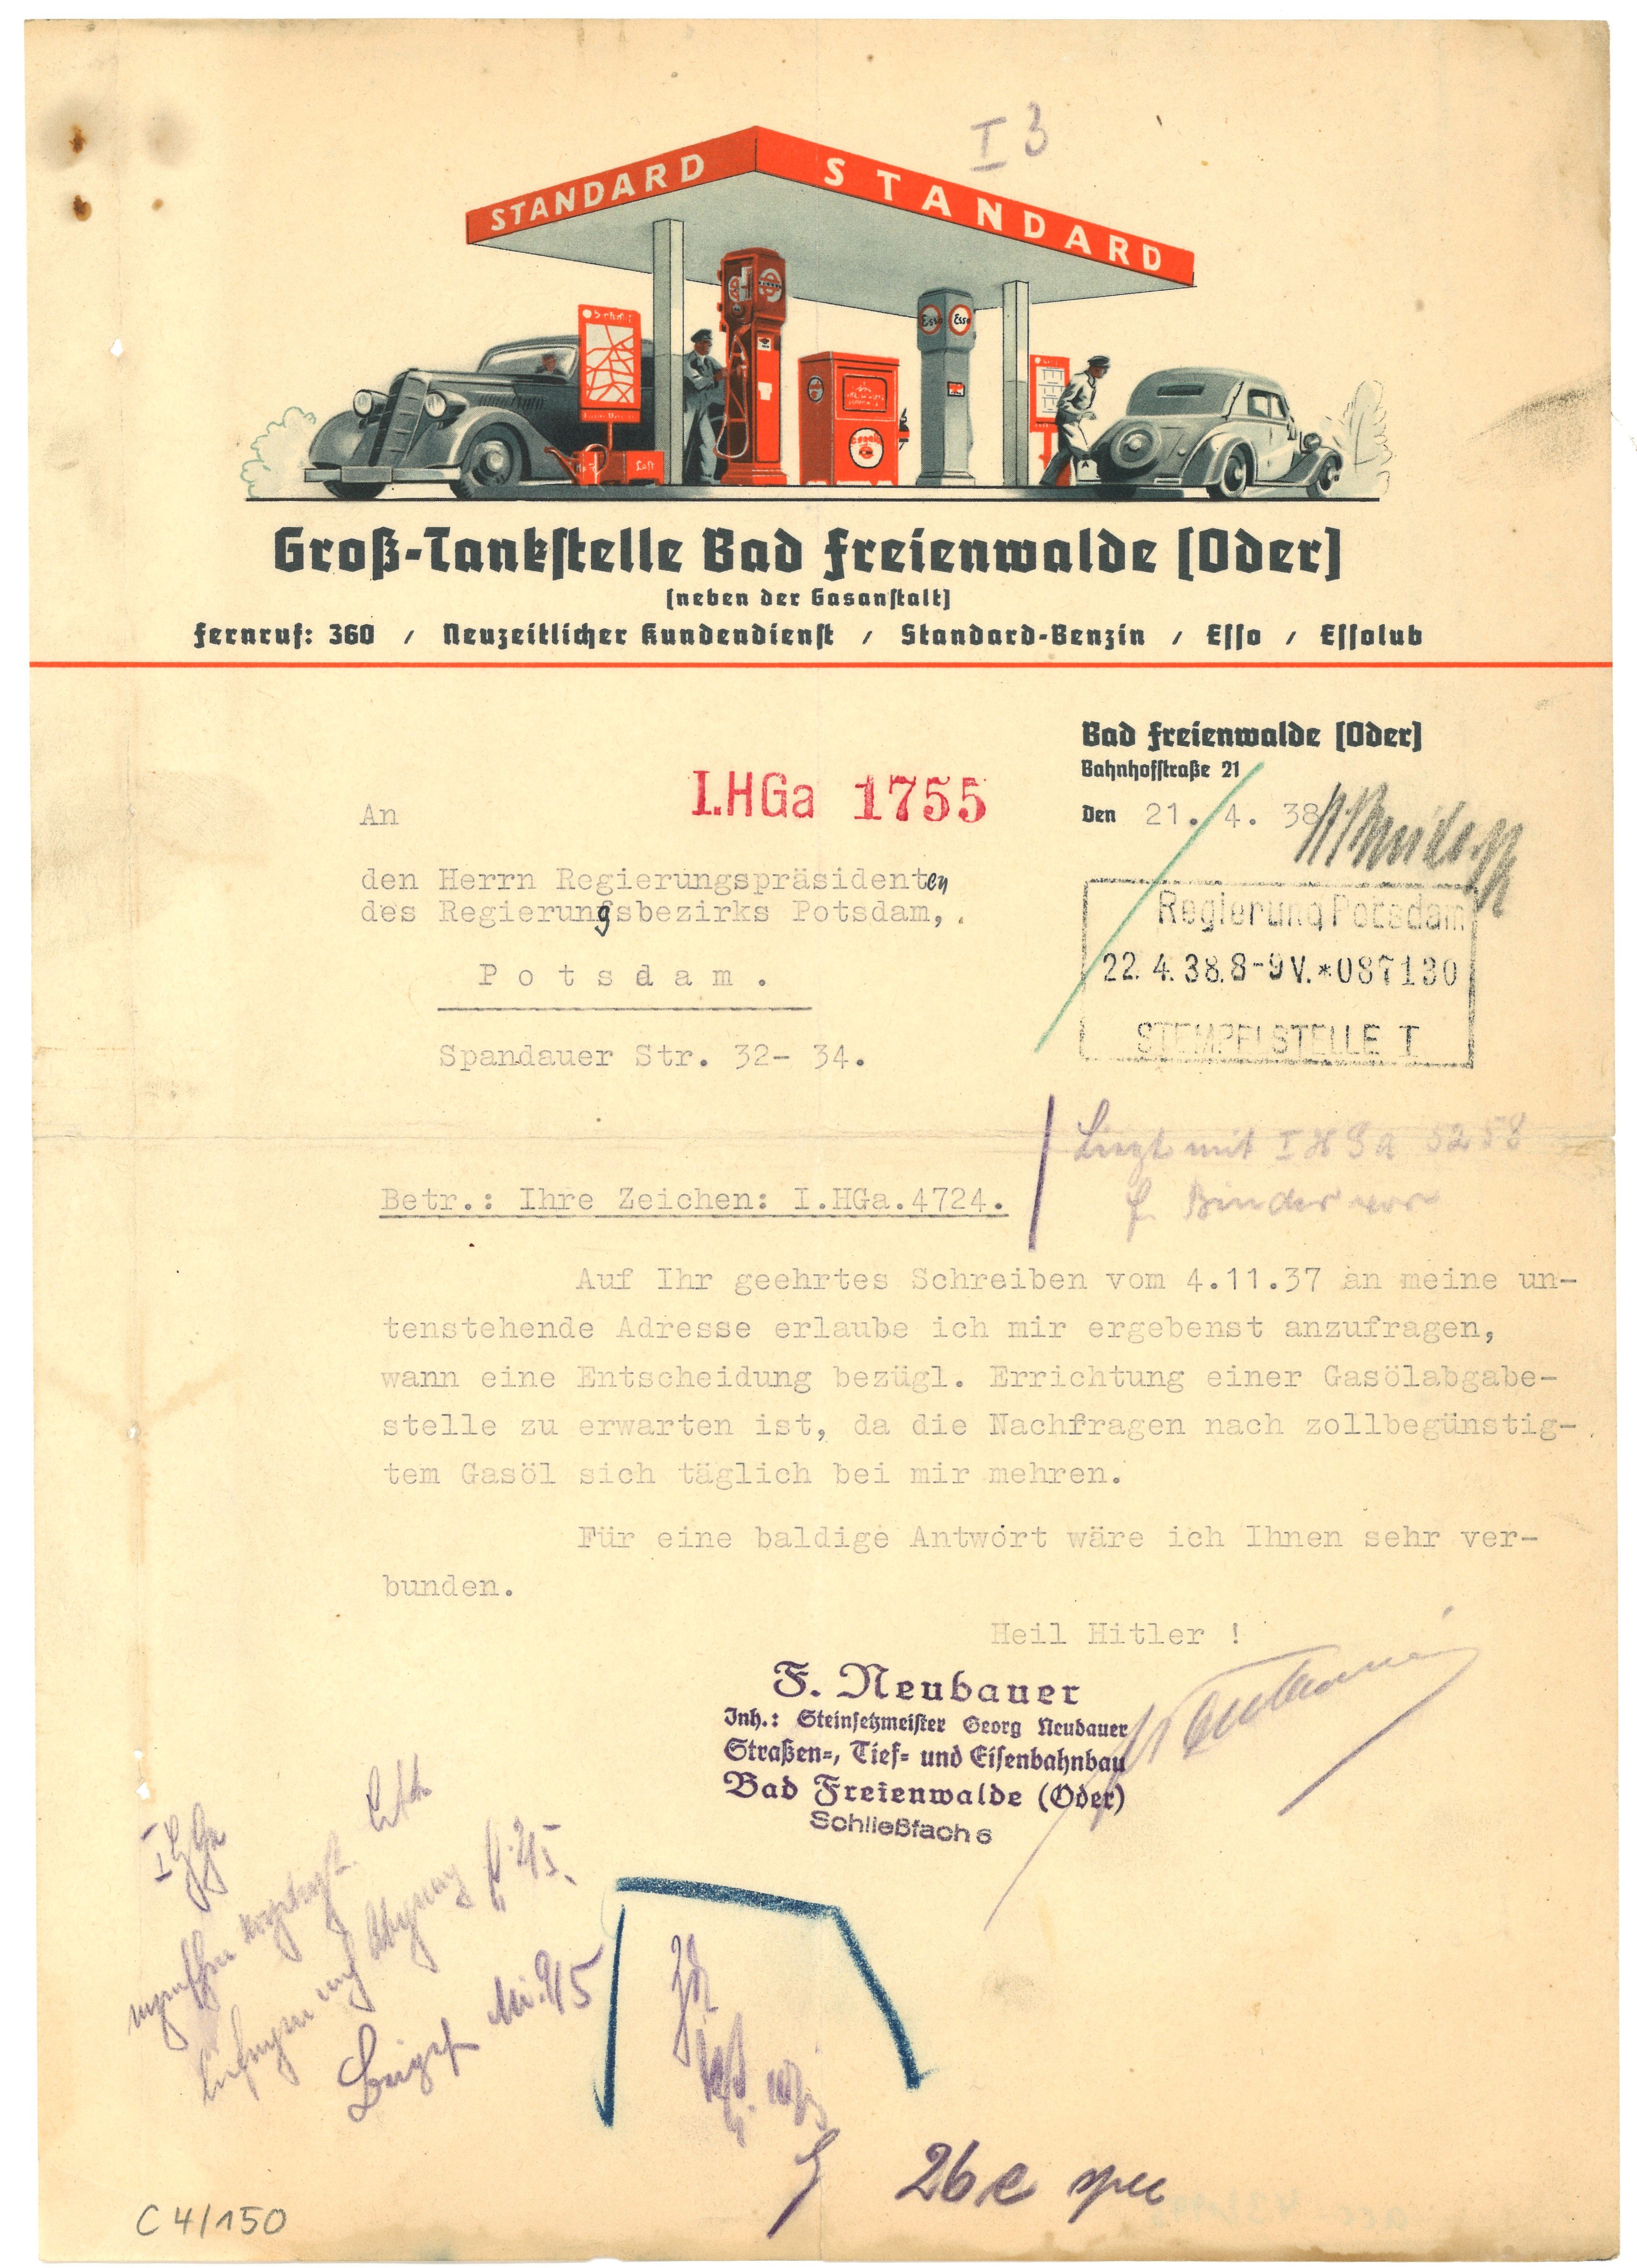 Geschäftsbrief der Groß-Tankstelle Bad Freienwalde (Oder) 1938 (Landesgeschichtliche Vereinigung für die Mark Brandenburg e.V., Archiv CC BY)